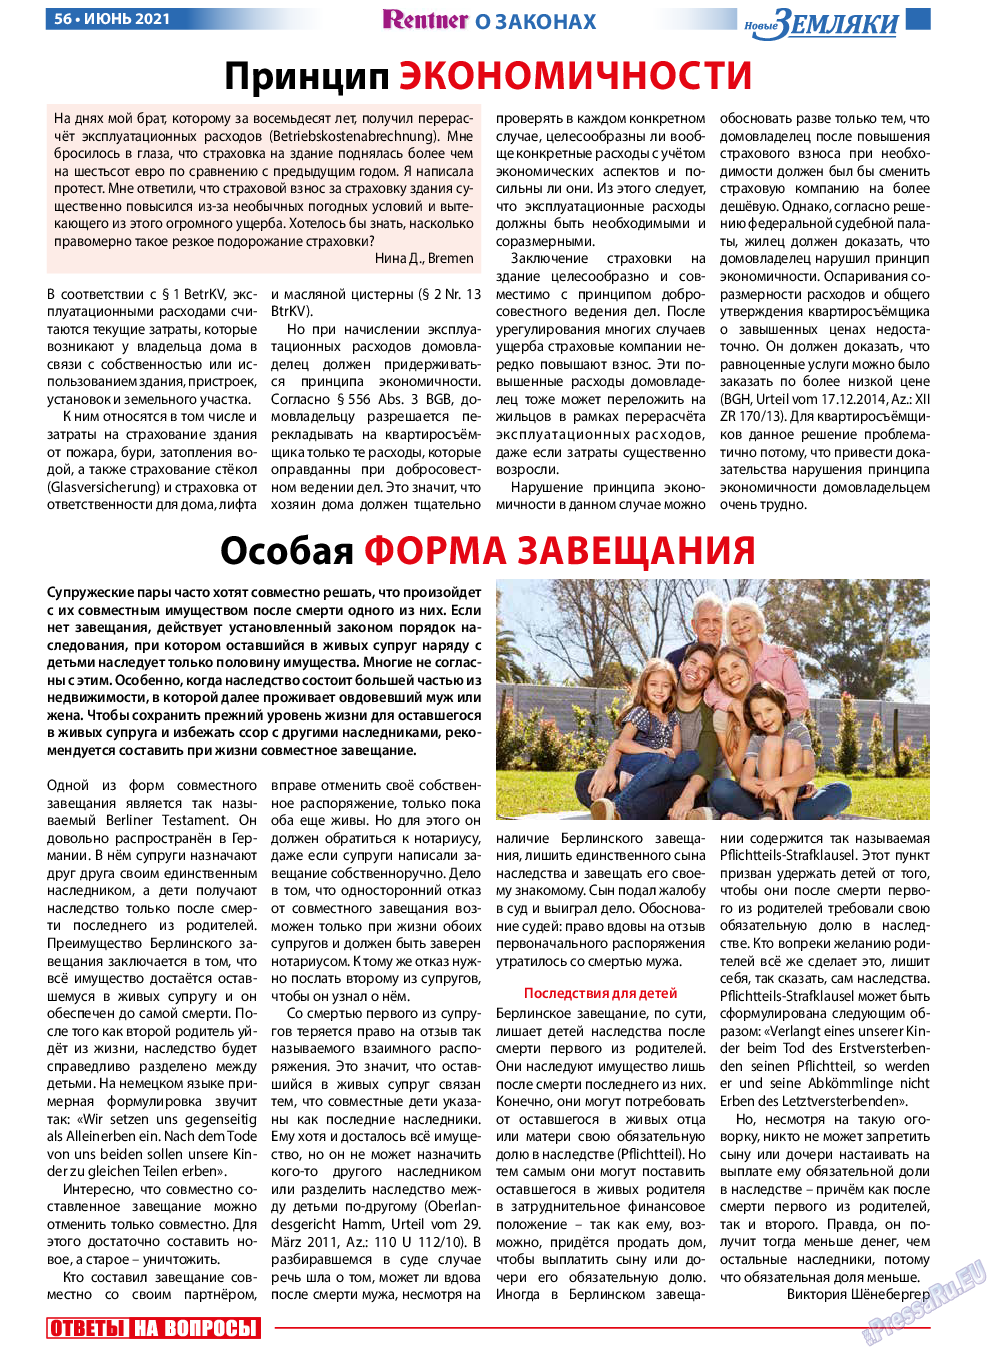 Новые Земляки, газета. 2021 №6 стр.56